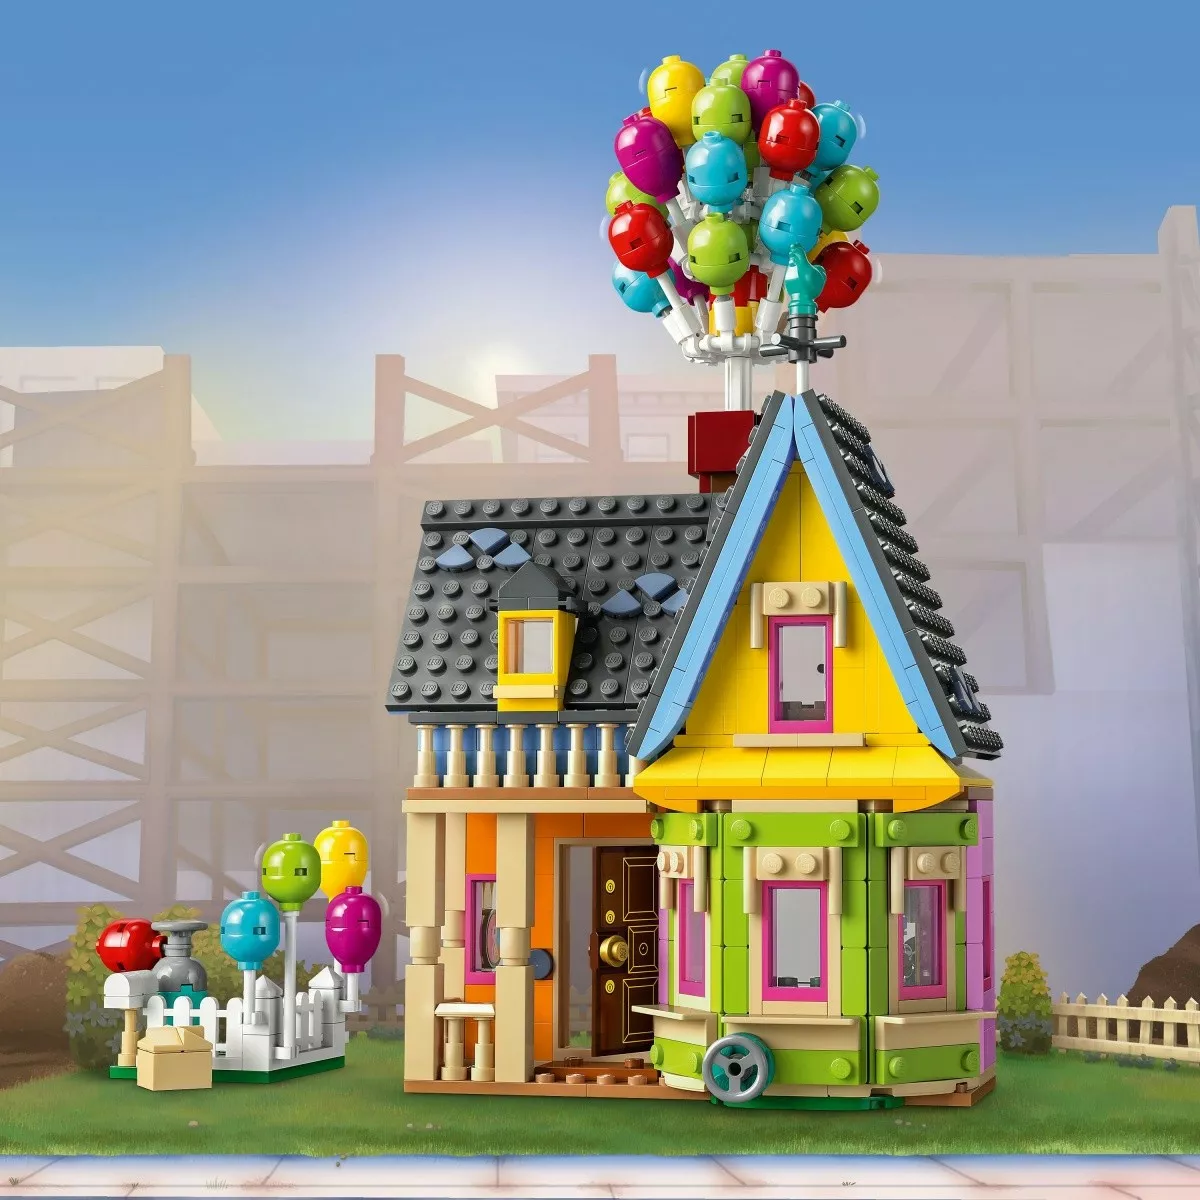 LEGO Klocki Disney Classic 43217 Dom z bajki Odlot